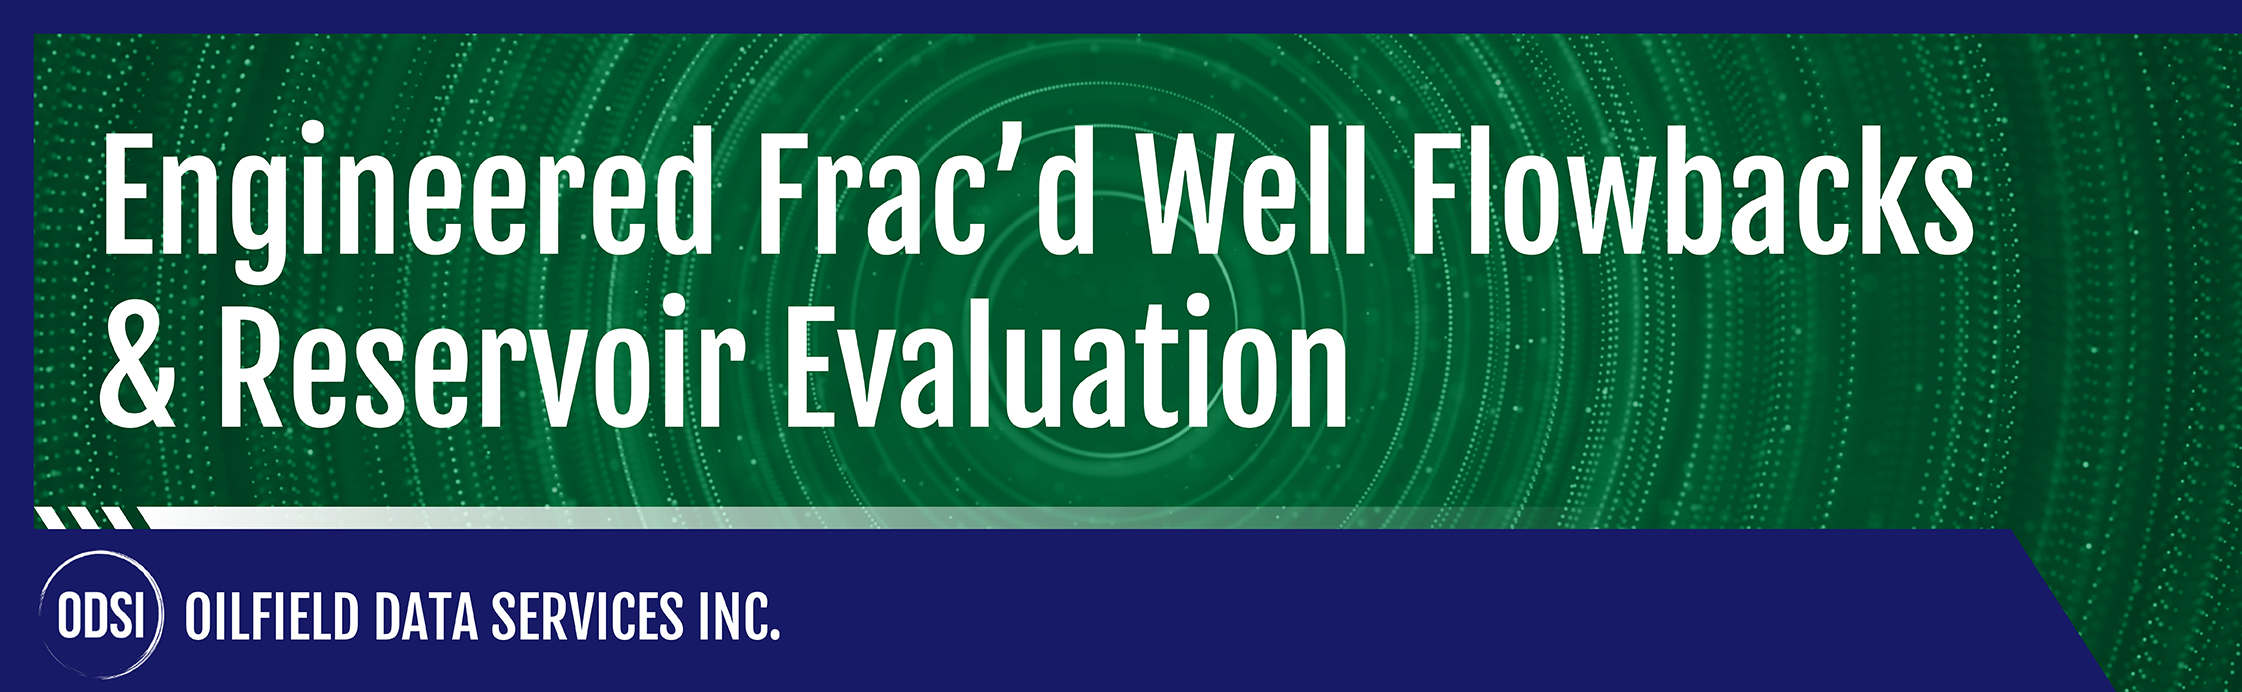 Engineered Frac'd Well Flowbacks & Reservoir Evaluation